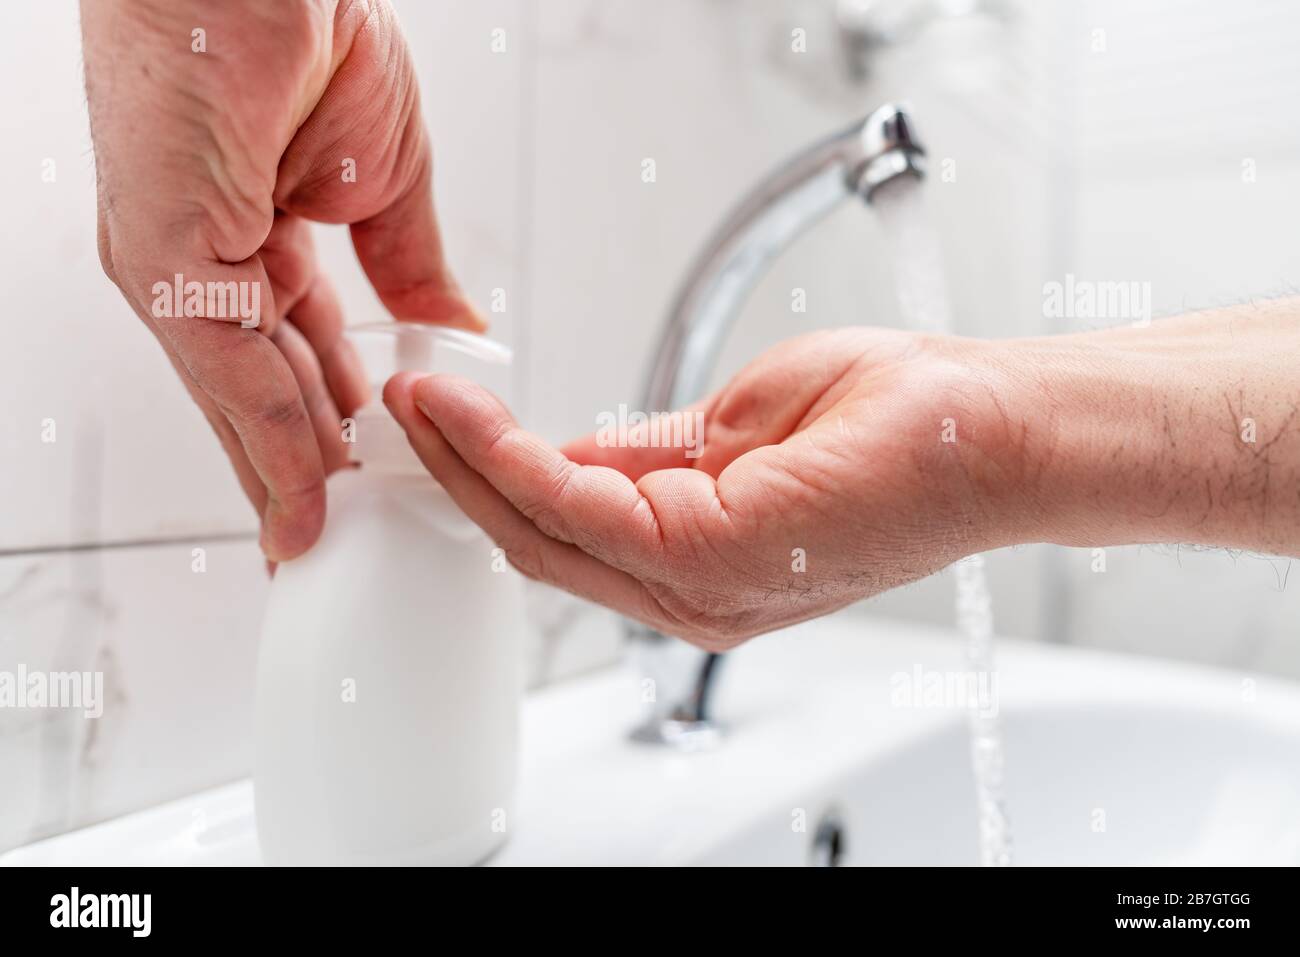 Igiene personale, pulizia delle mani con sapone spesso sul rubinetto per proteggere dal virus Foto Stock